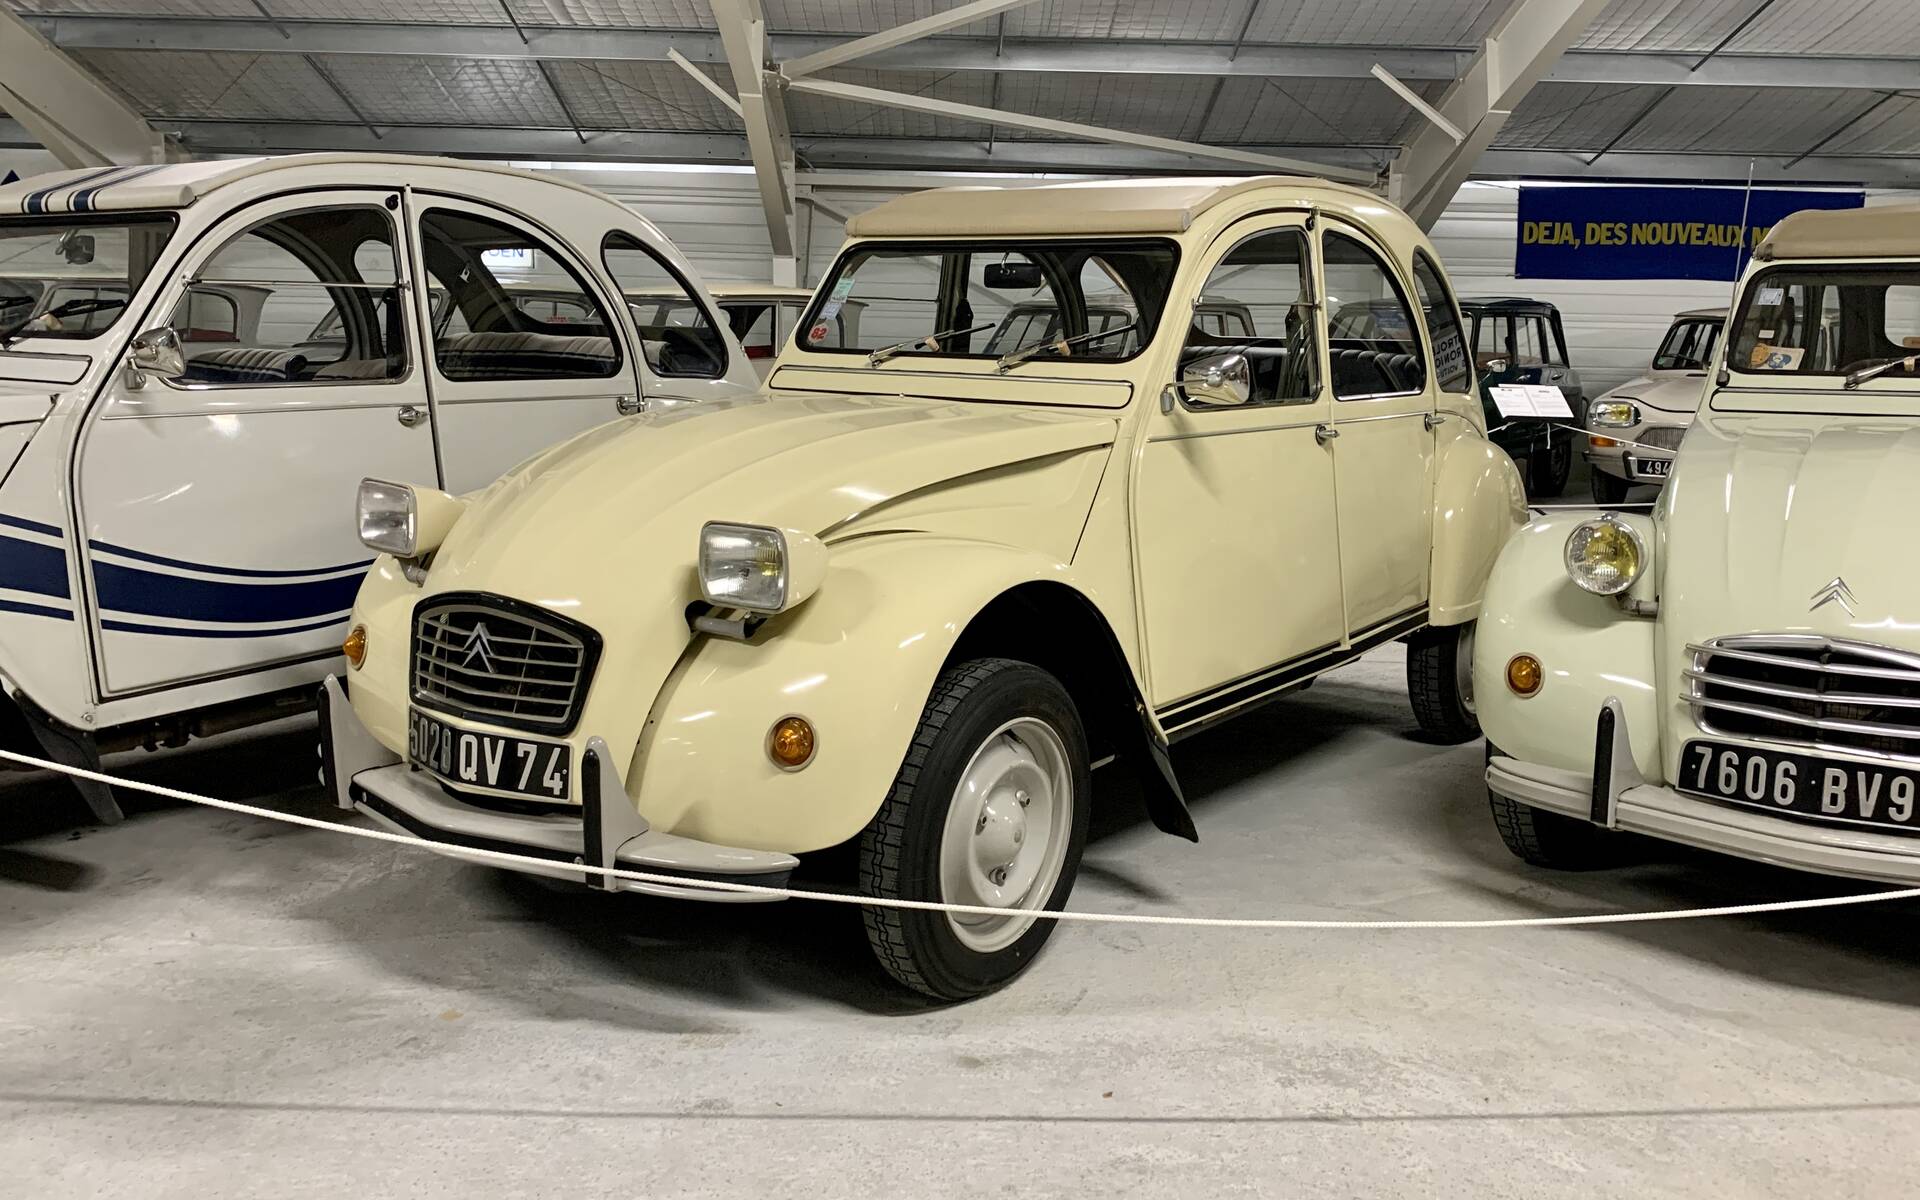 Photos: plus de 100 Citroën d'exception réunies dans un musée en France 543142-photos-plus-de-100-citroen-d-exception-reunies-dans-un-musee-en-france